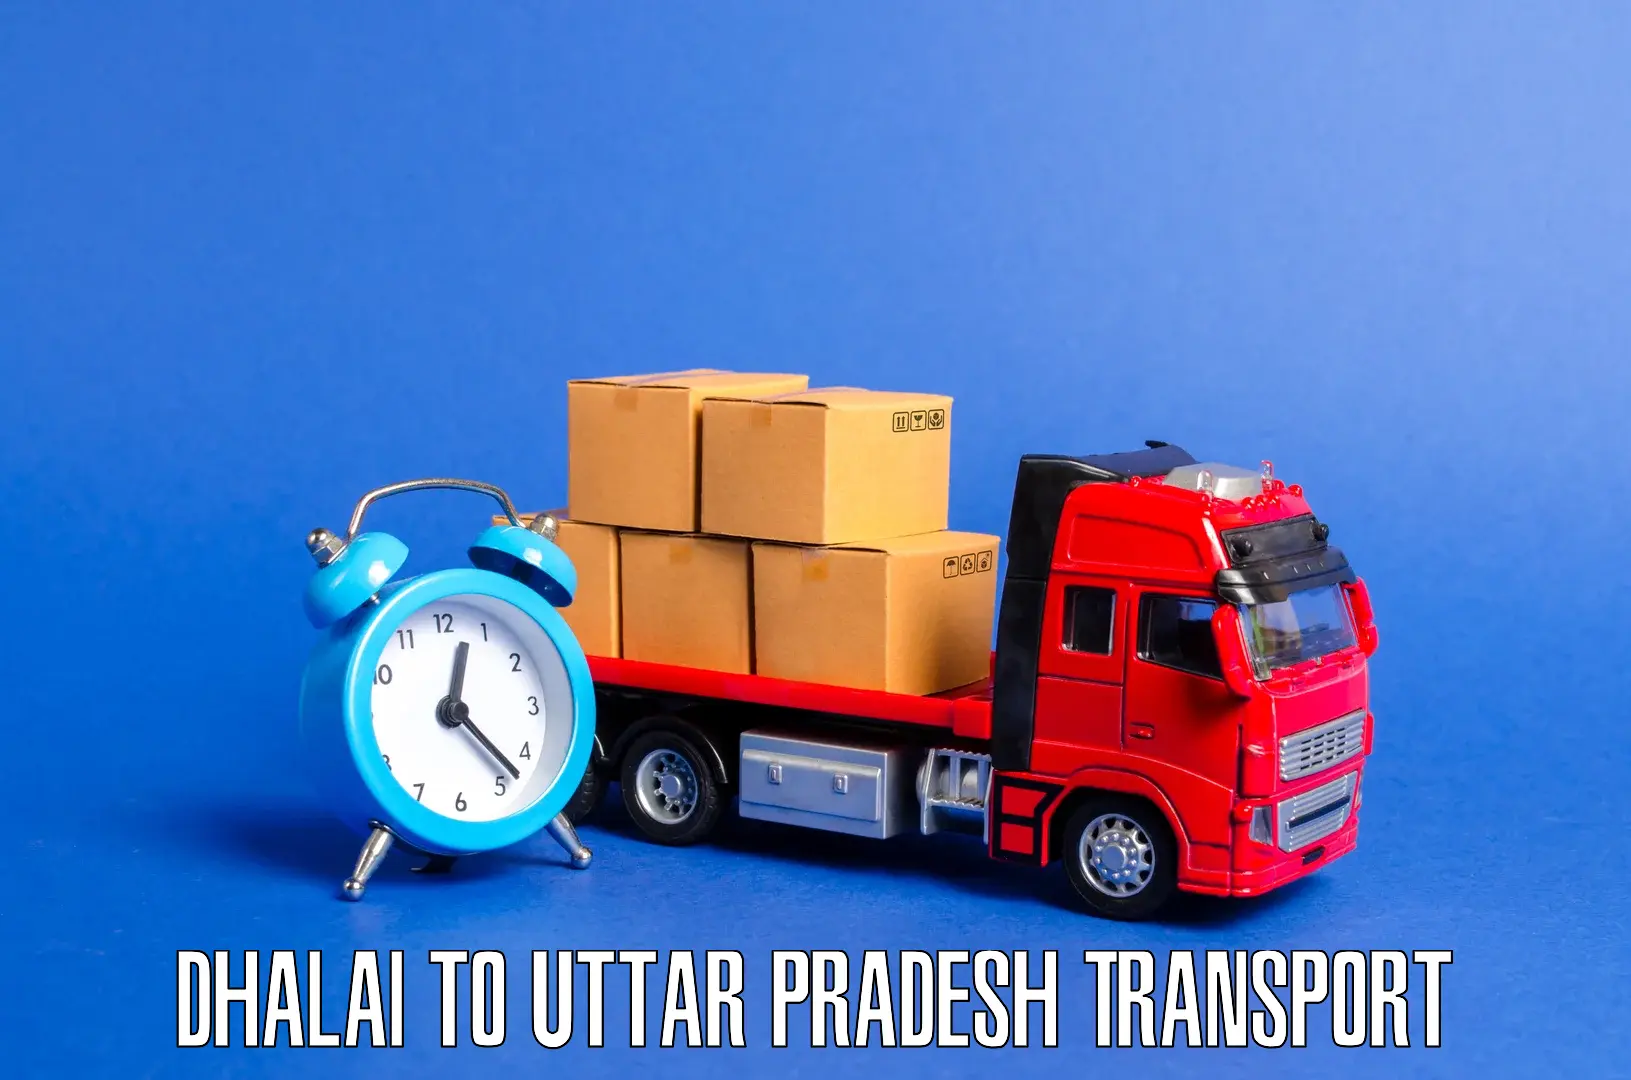 Shipping partner Dhalai to Allahabad